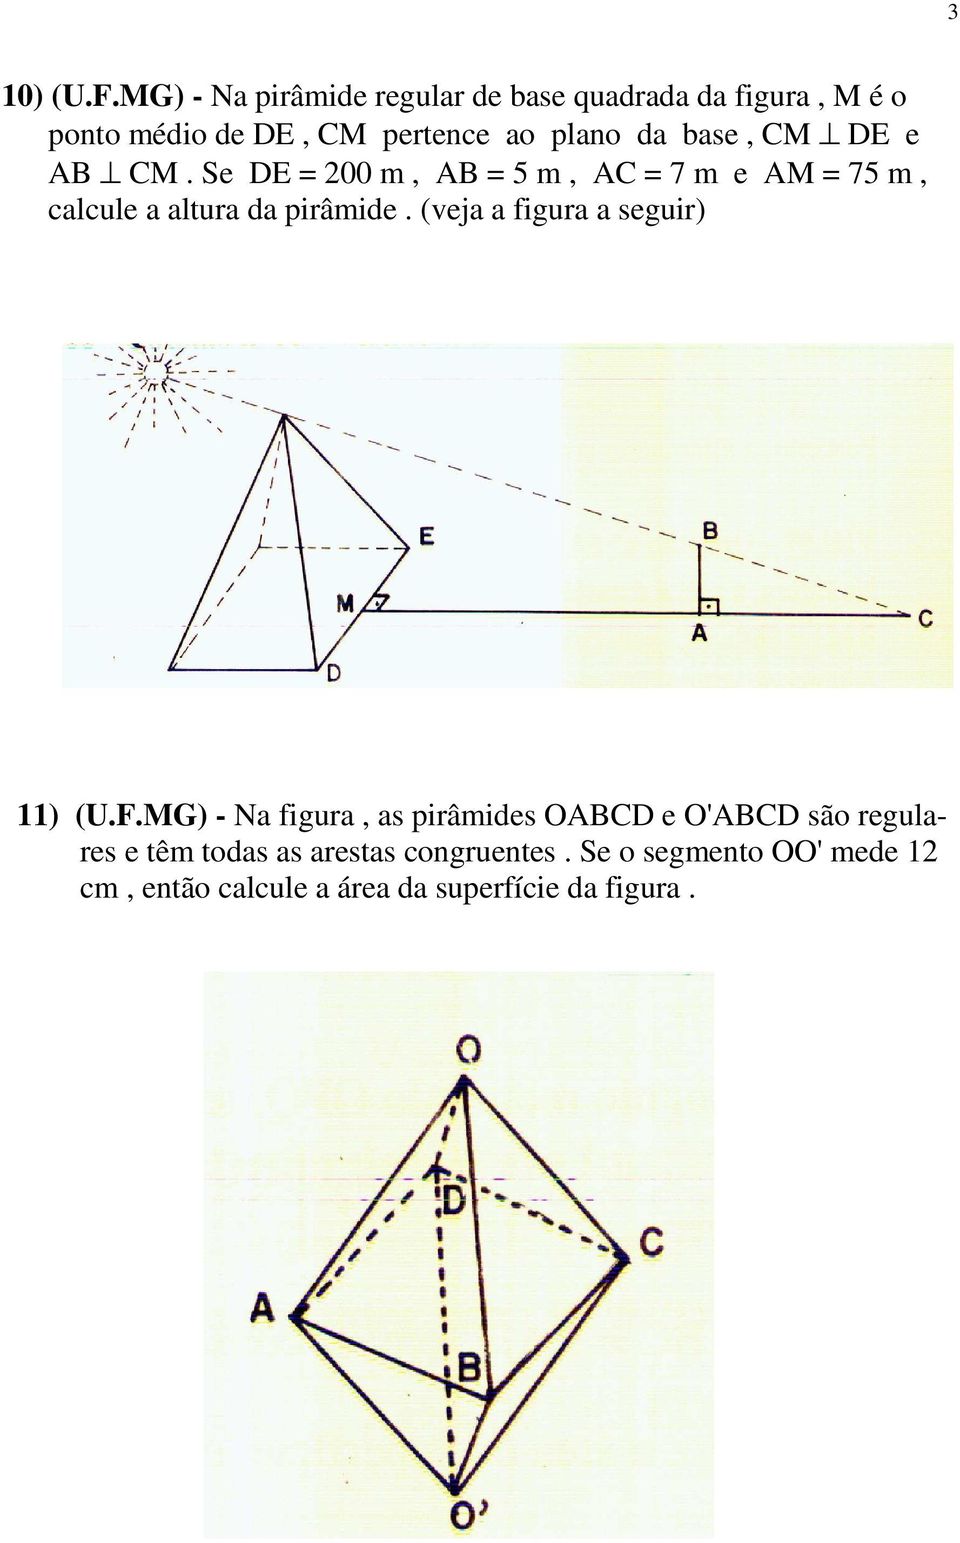 base, CM DE e AB CM. Se DE = 00 m, AB = 5 m, AC = 7 m e AM = 75 m, calcule a altura da pirâmide.